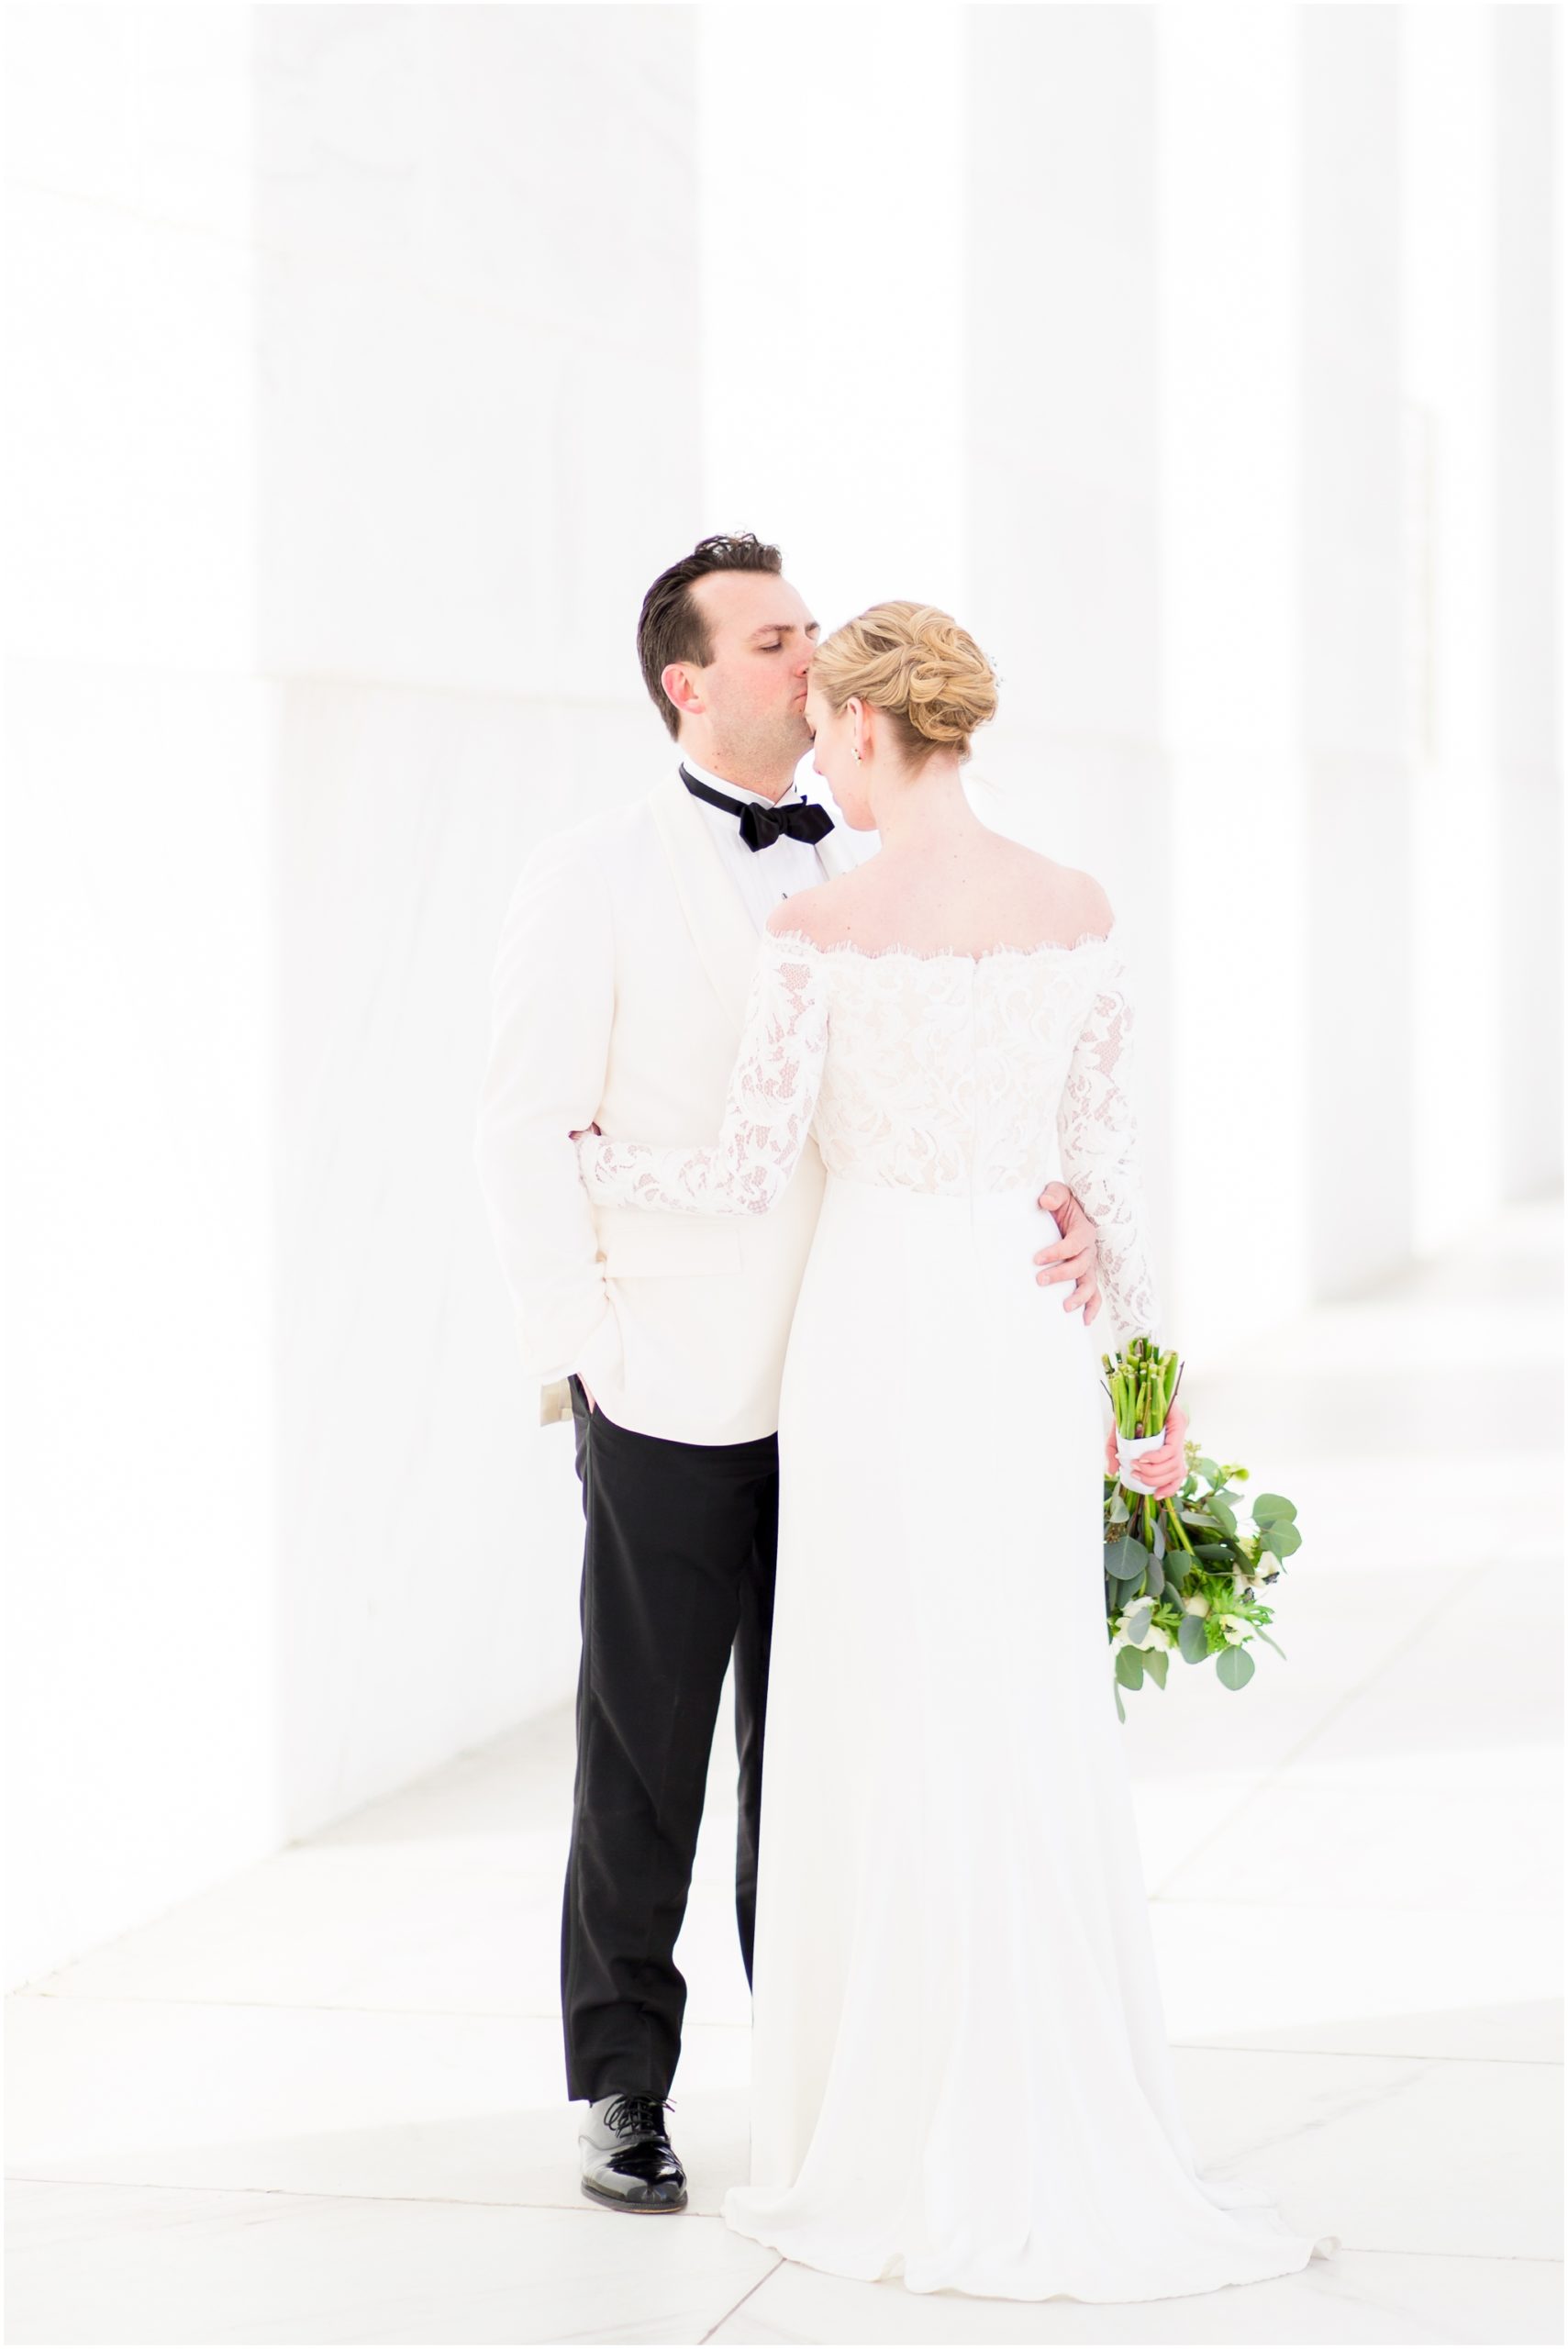 Lincoln Memorial wedding photos